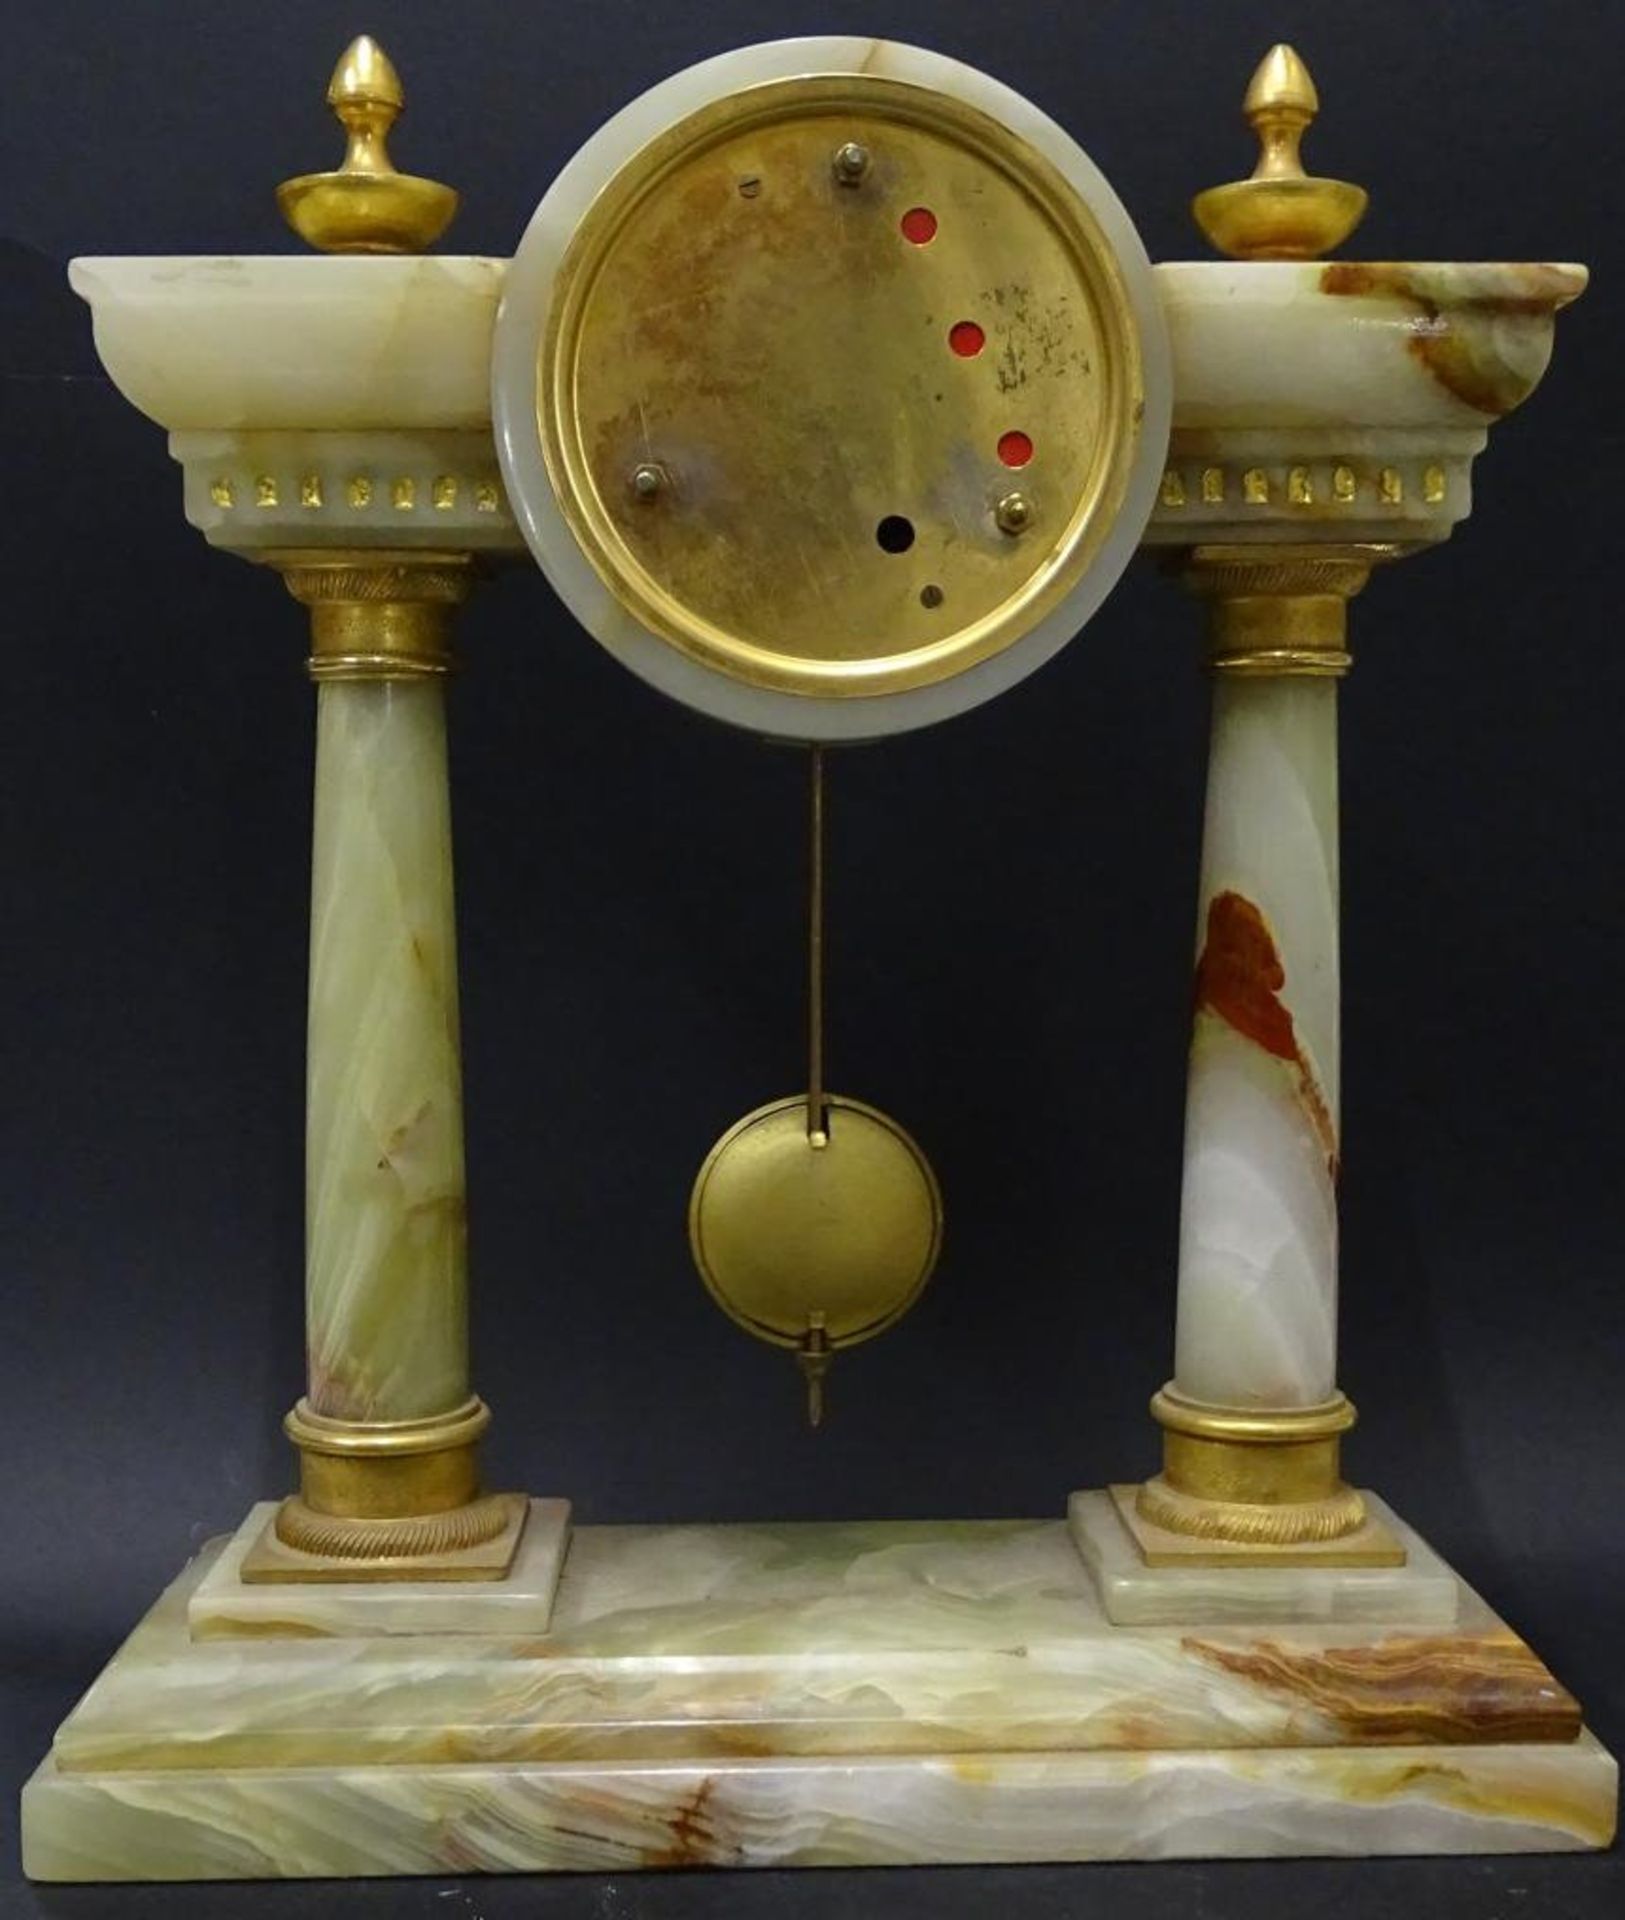 Portal-Uhr "Walt", Onyxgehäuse, H-32 cm, B-26 cm, Funktion nicht geprü - Bild 5 aus 5